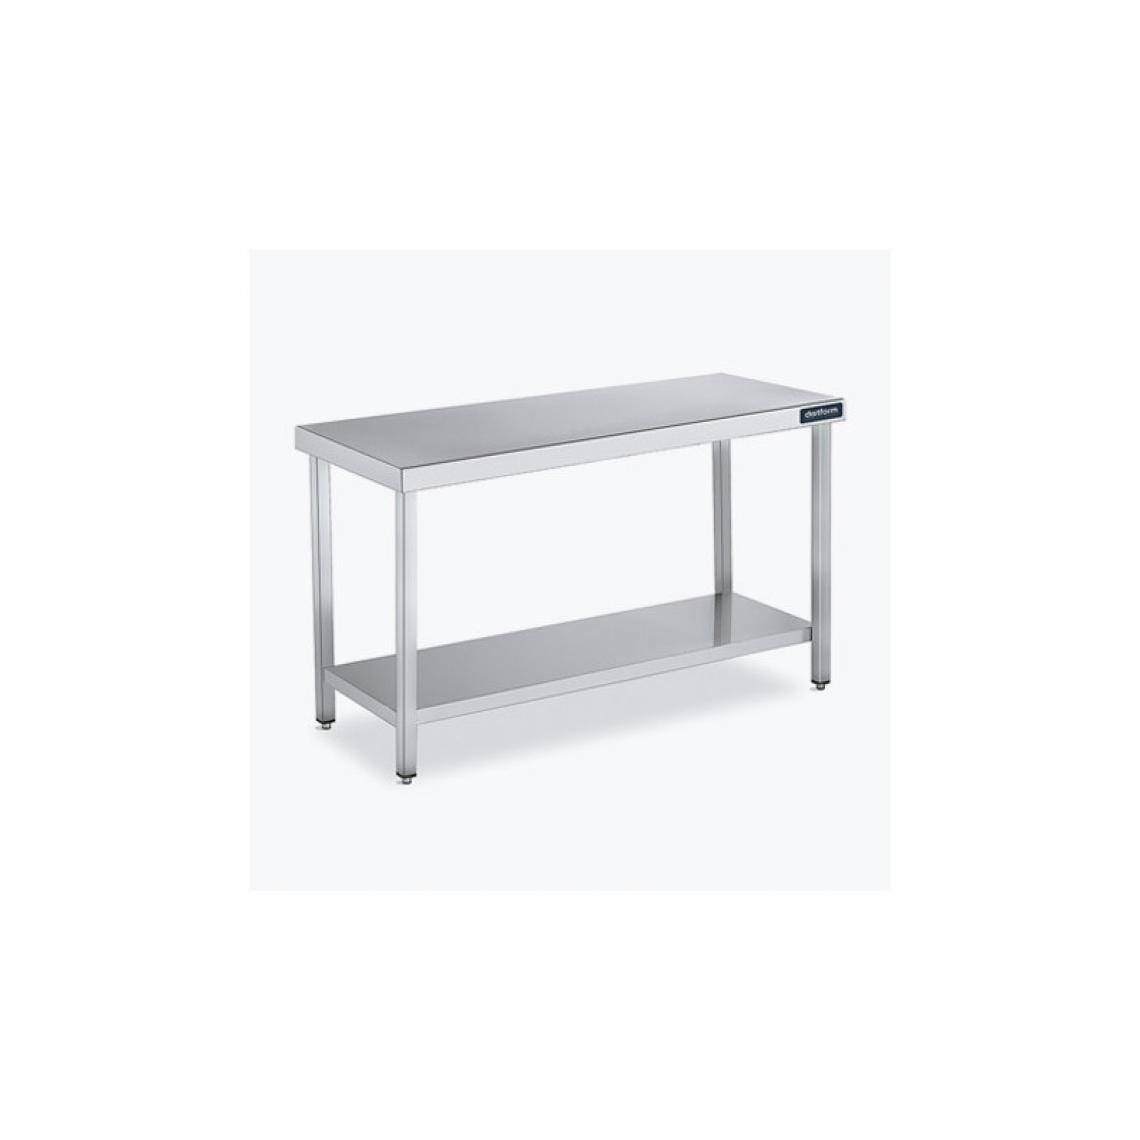 DISTFORM - Table Centrale 600x600 avec Étagère - Distform - Inox 18/102600x600x850mm - Tables à manger